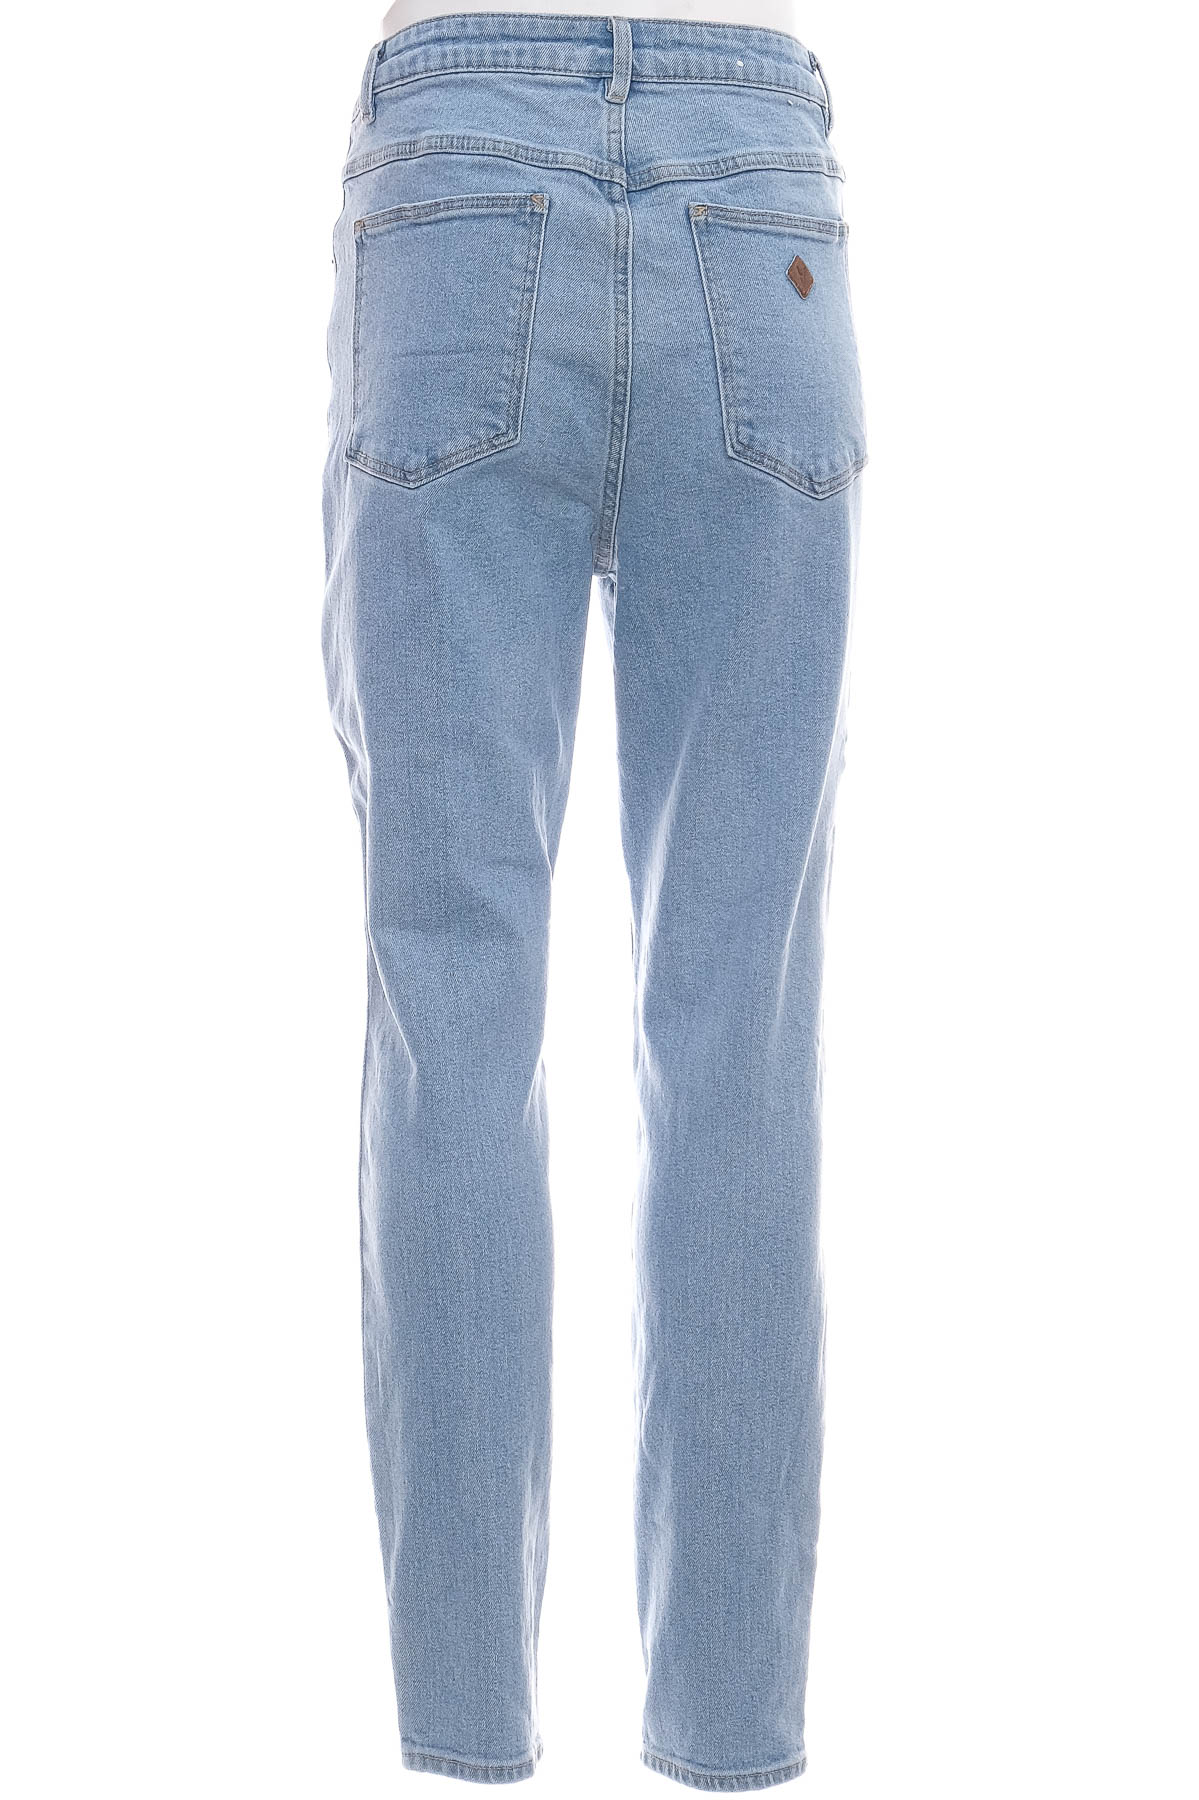 Men's jeans - Abrand Jeans - 1